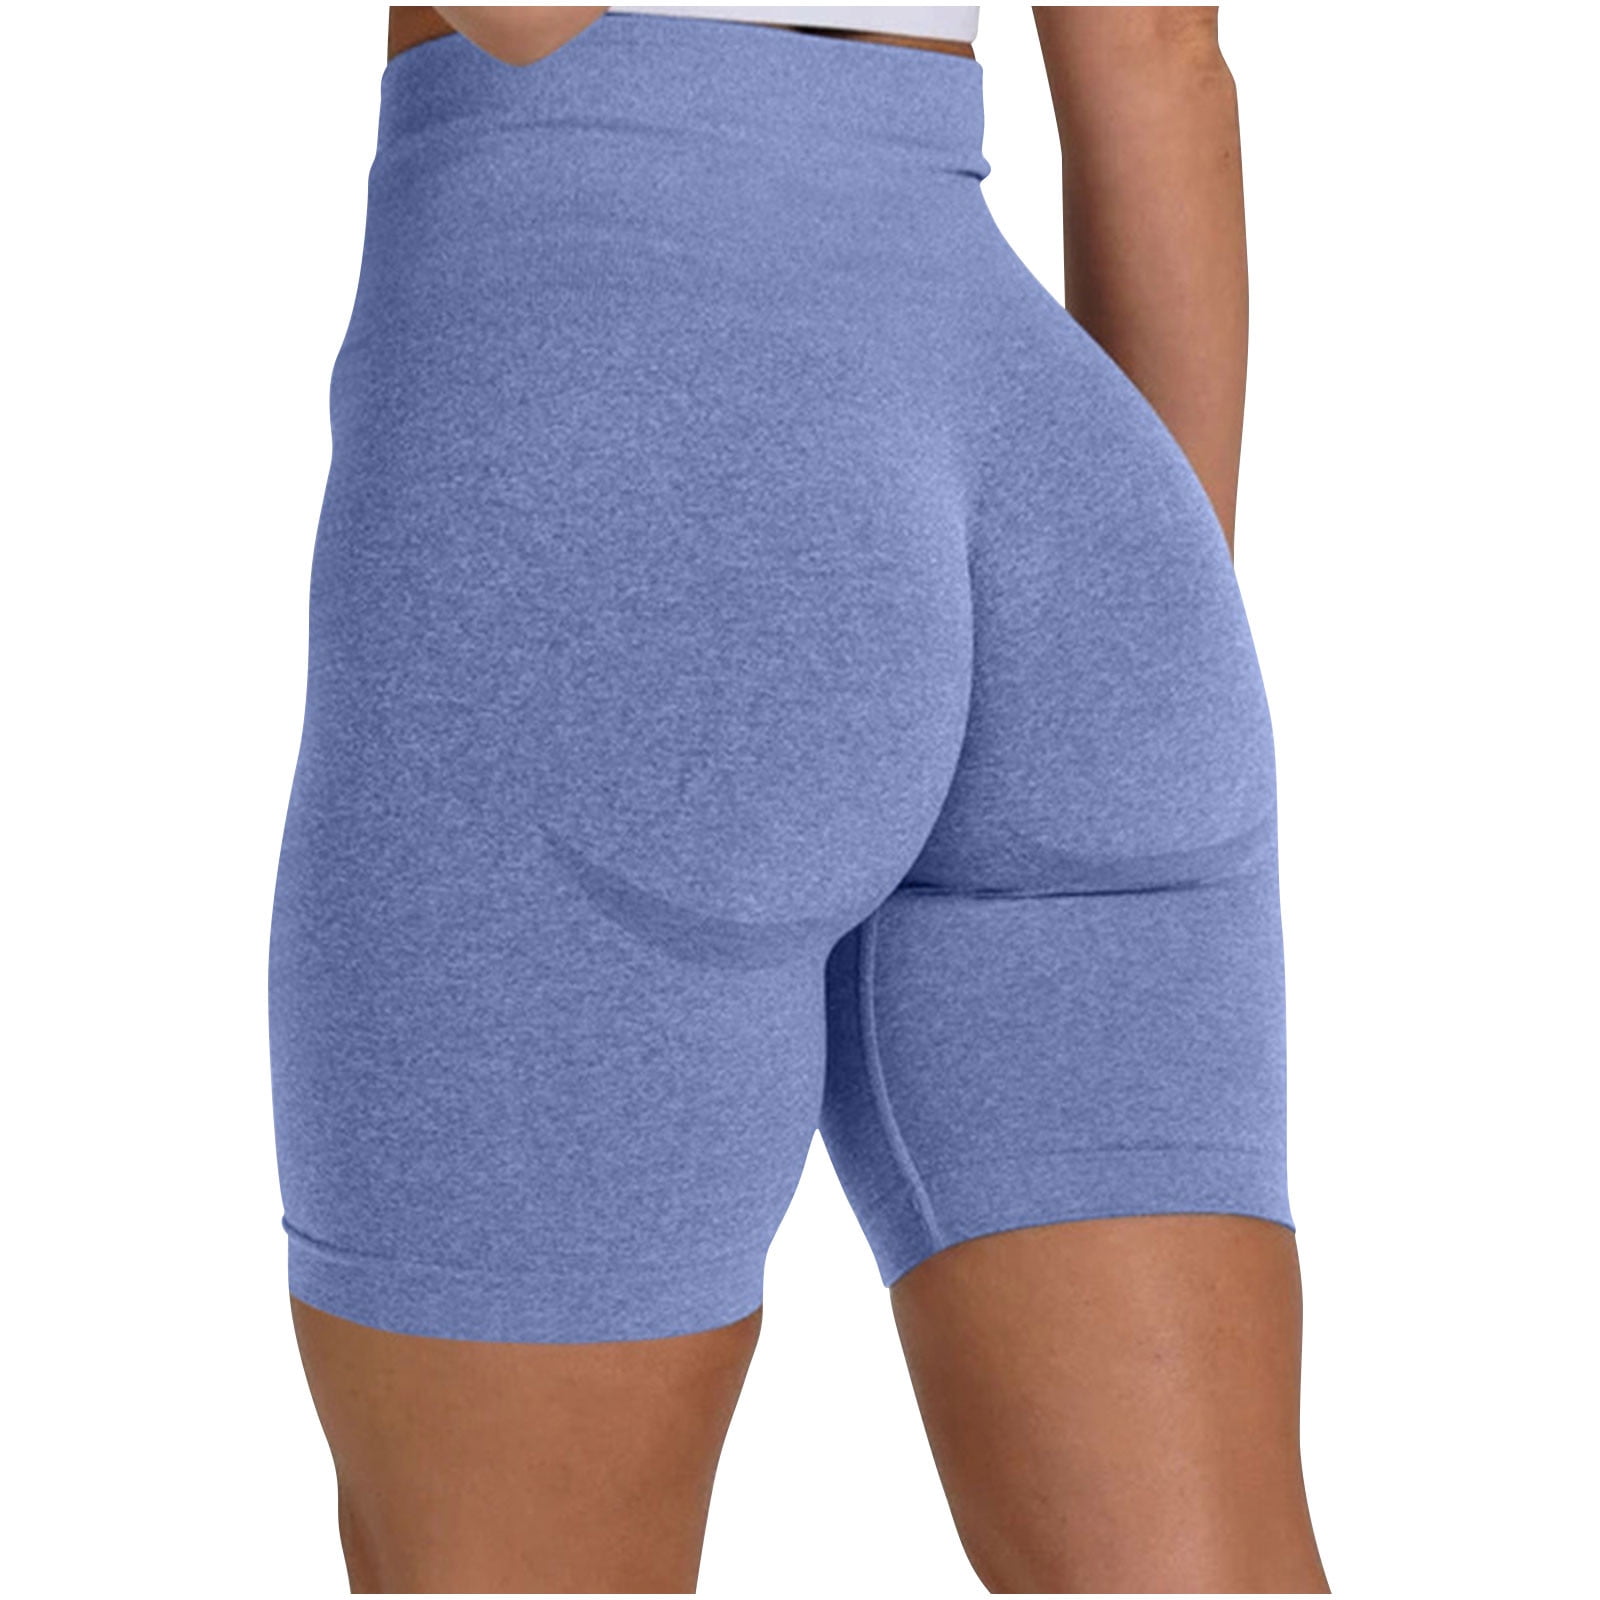 YYDGH Scrunch Butt Lifting Workout Shorts for Women High Waisted